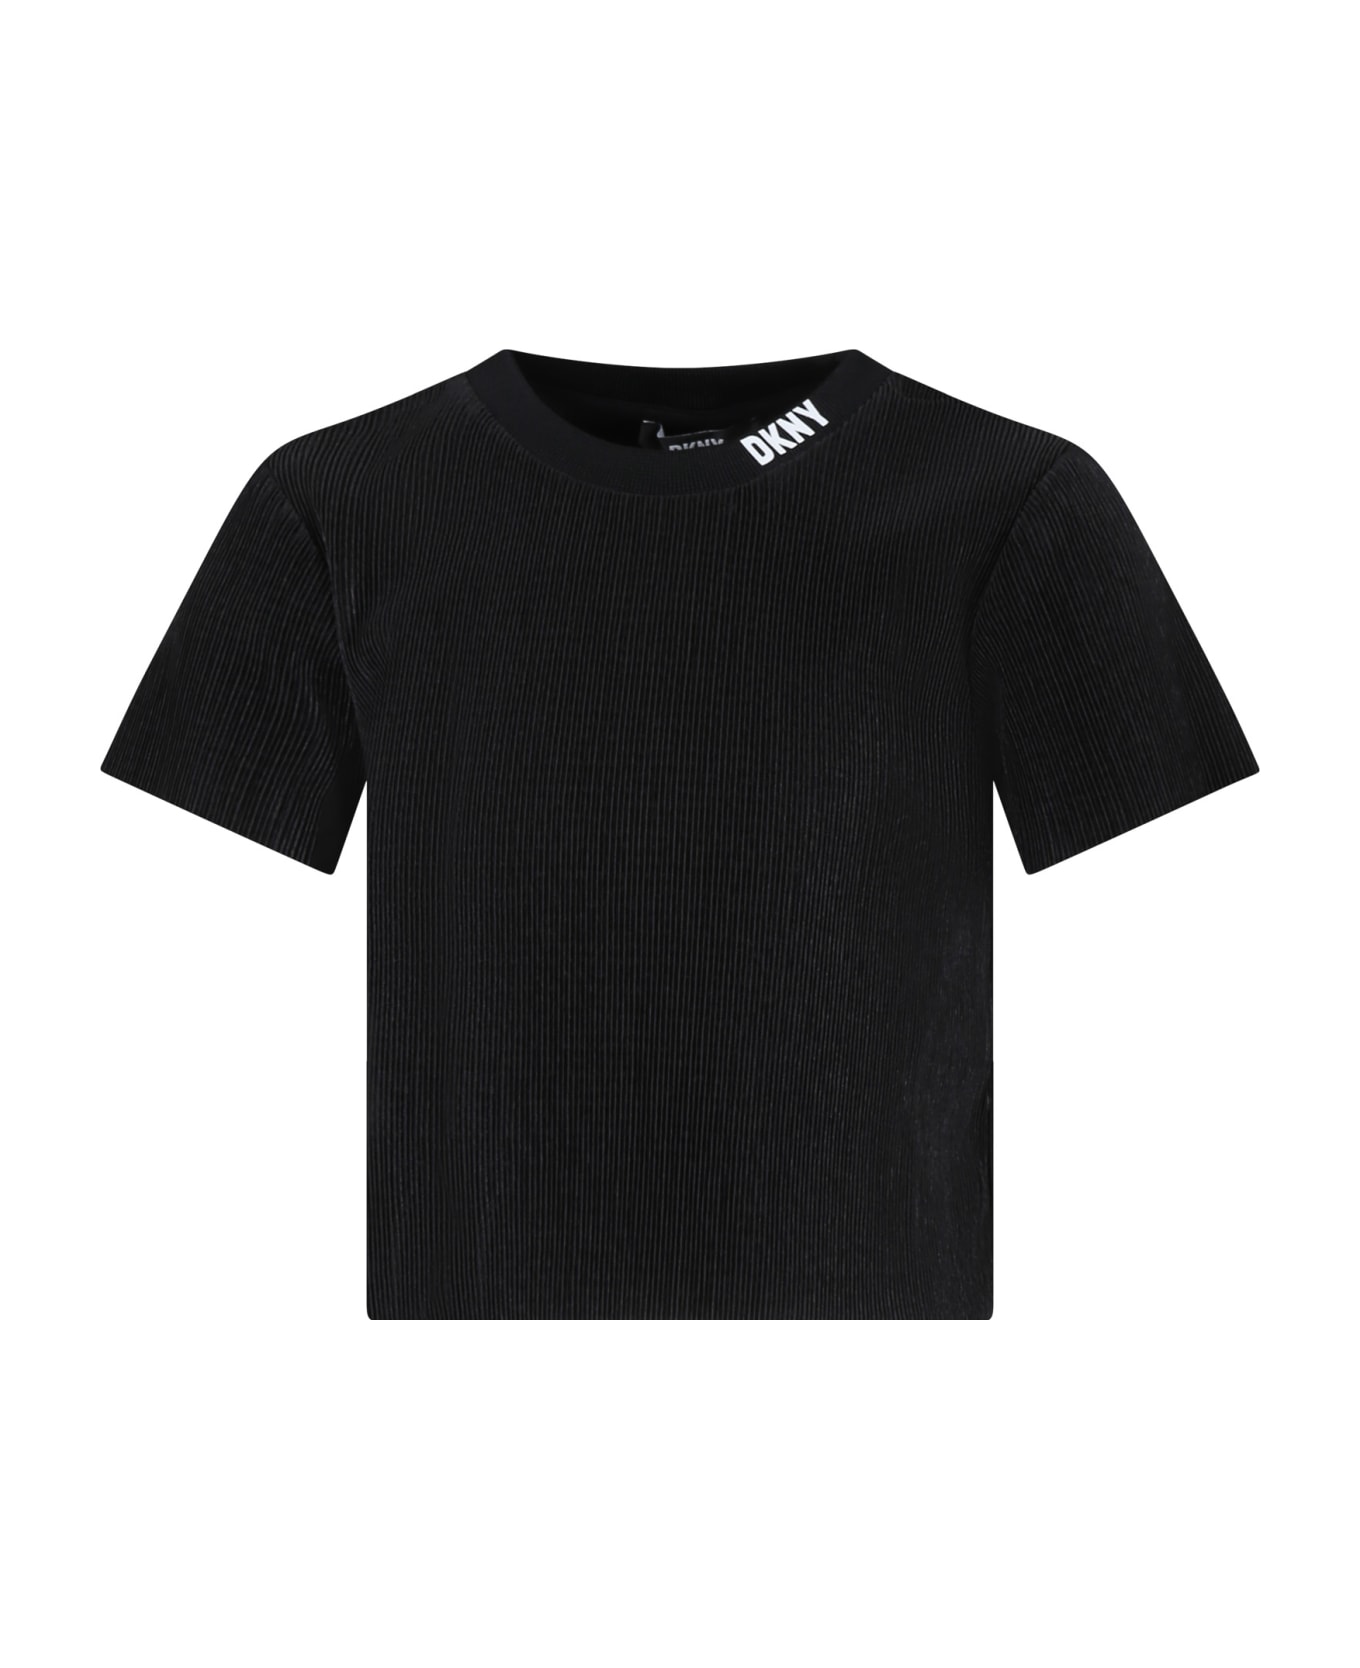 DKNY Black T-shirt For Girl - Black